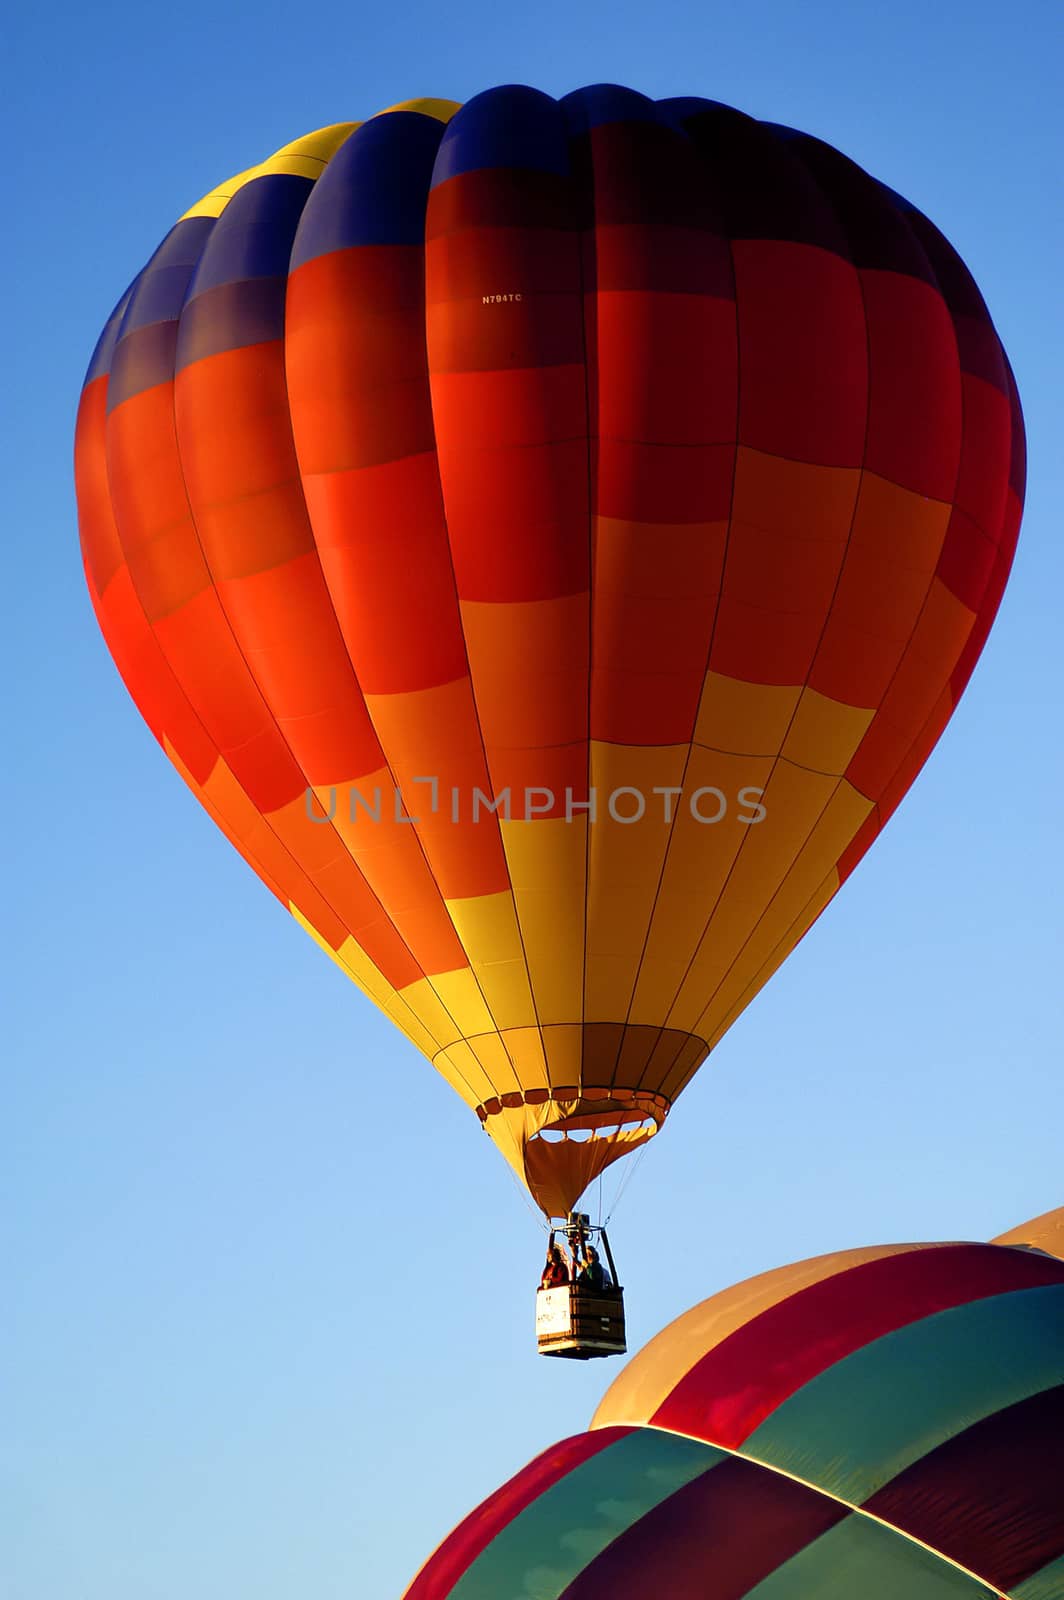 Balloon by cestes001